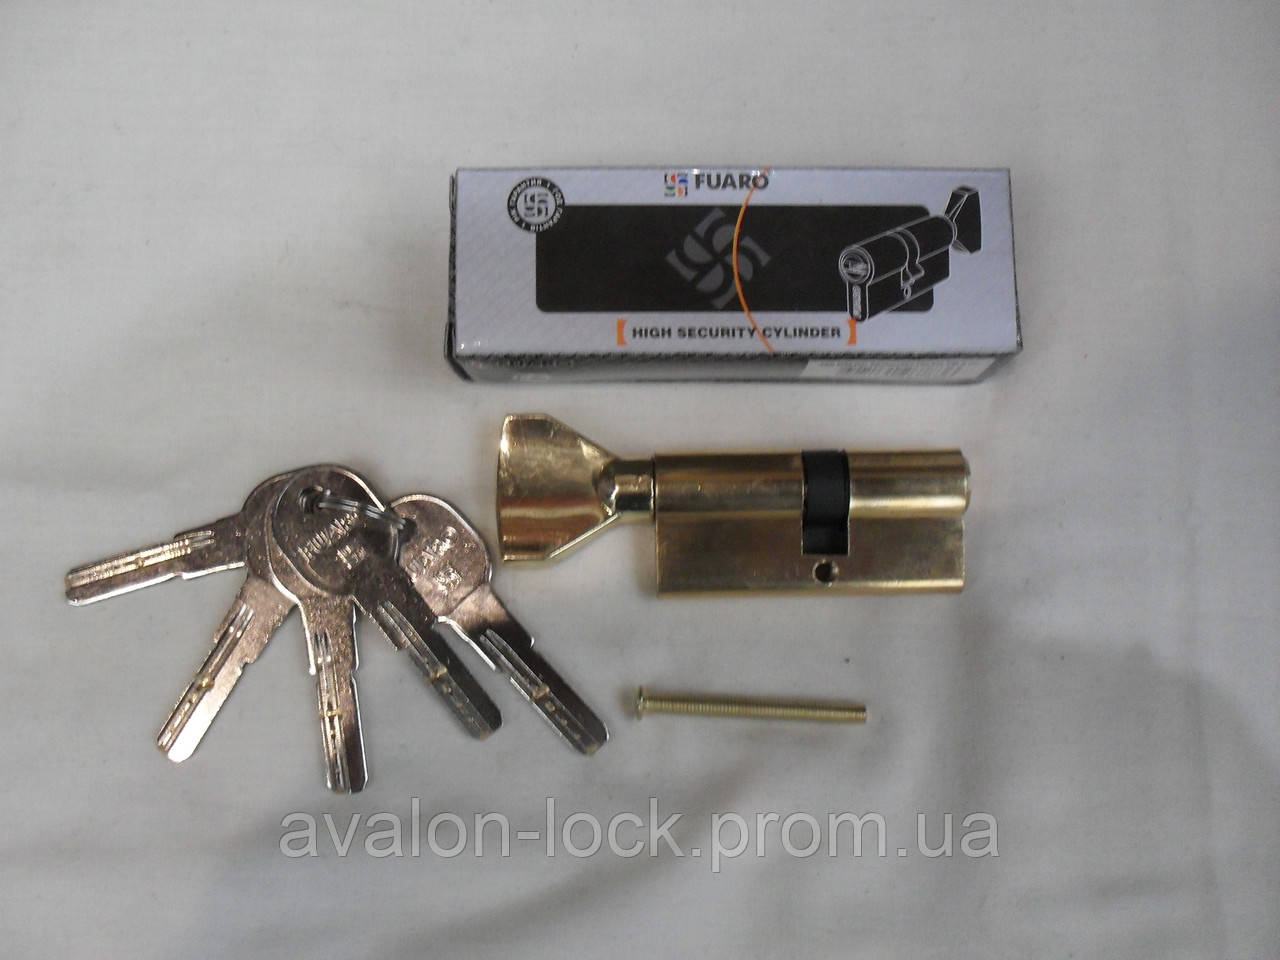 Циліндровий механізм Fuaro DM 68 mm. Латунний, з лазерним ключем, барашок, хром і золото